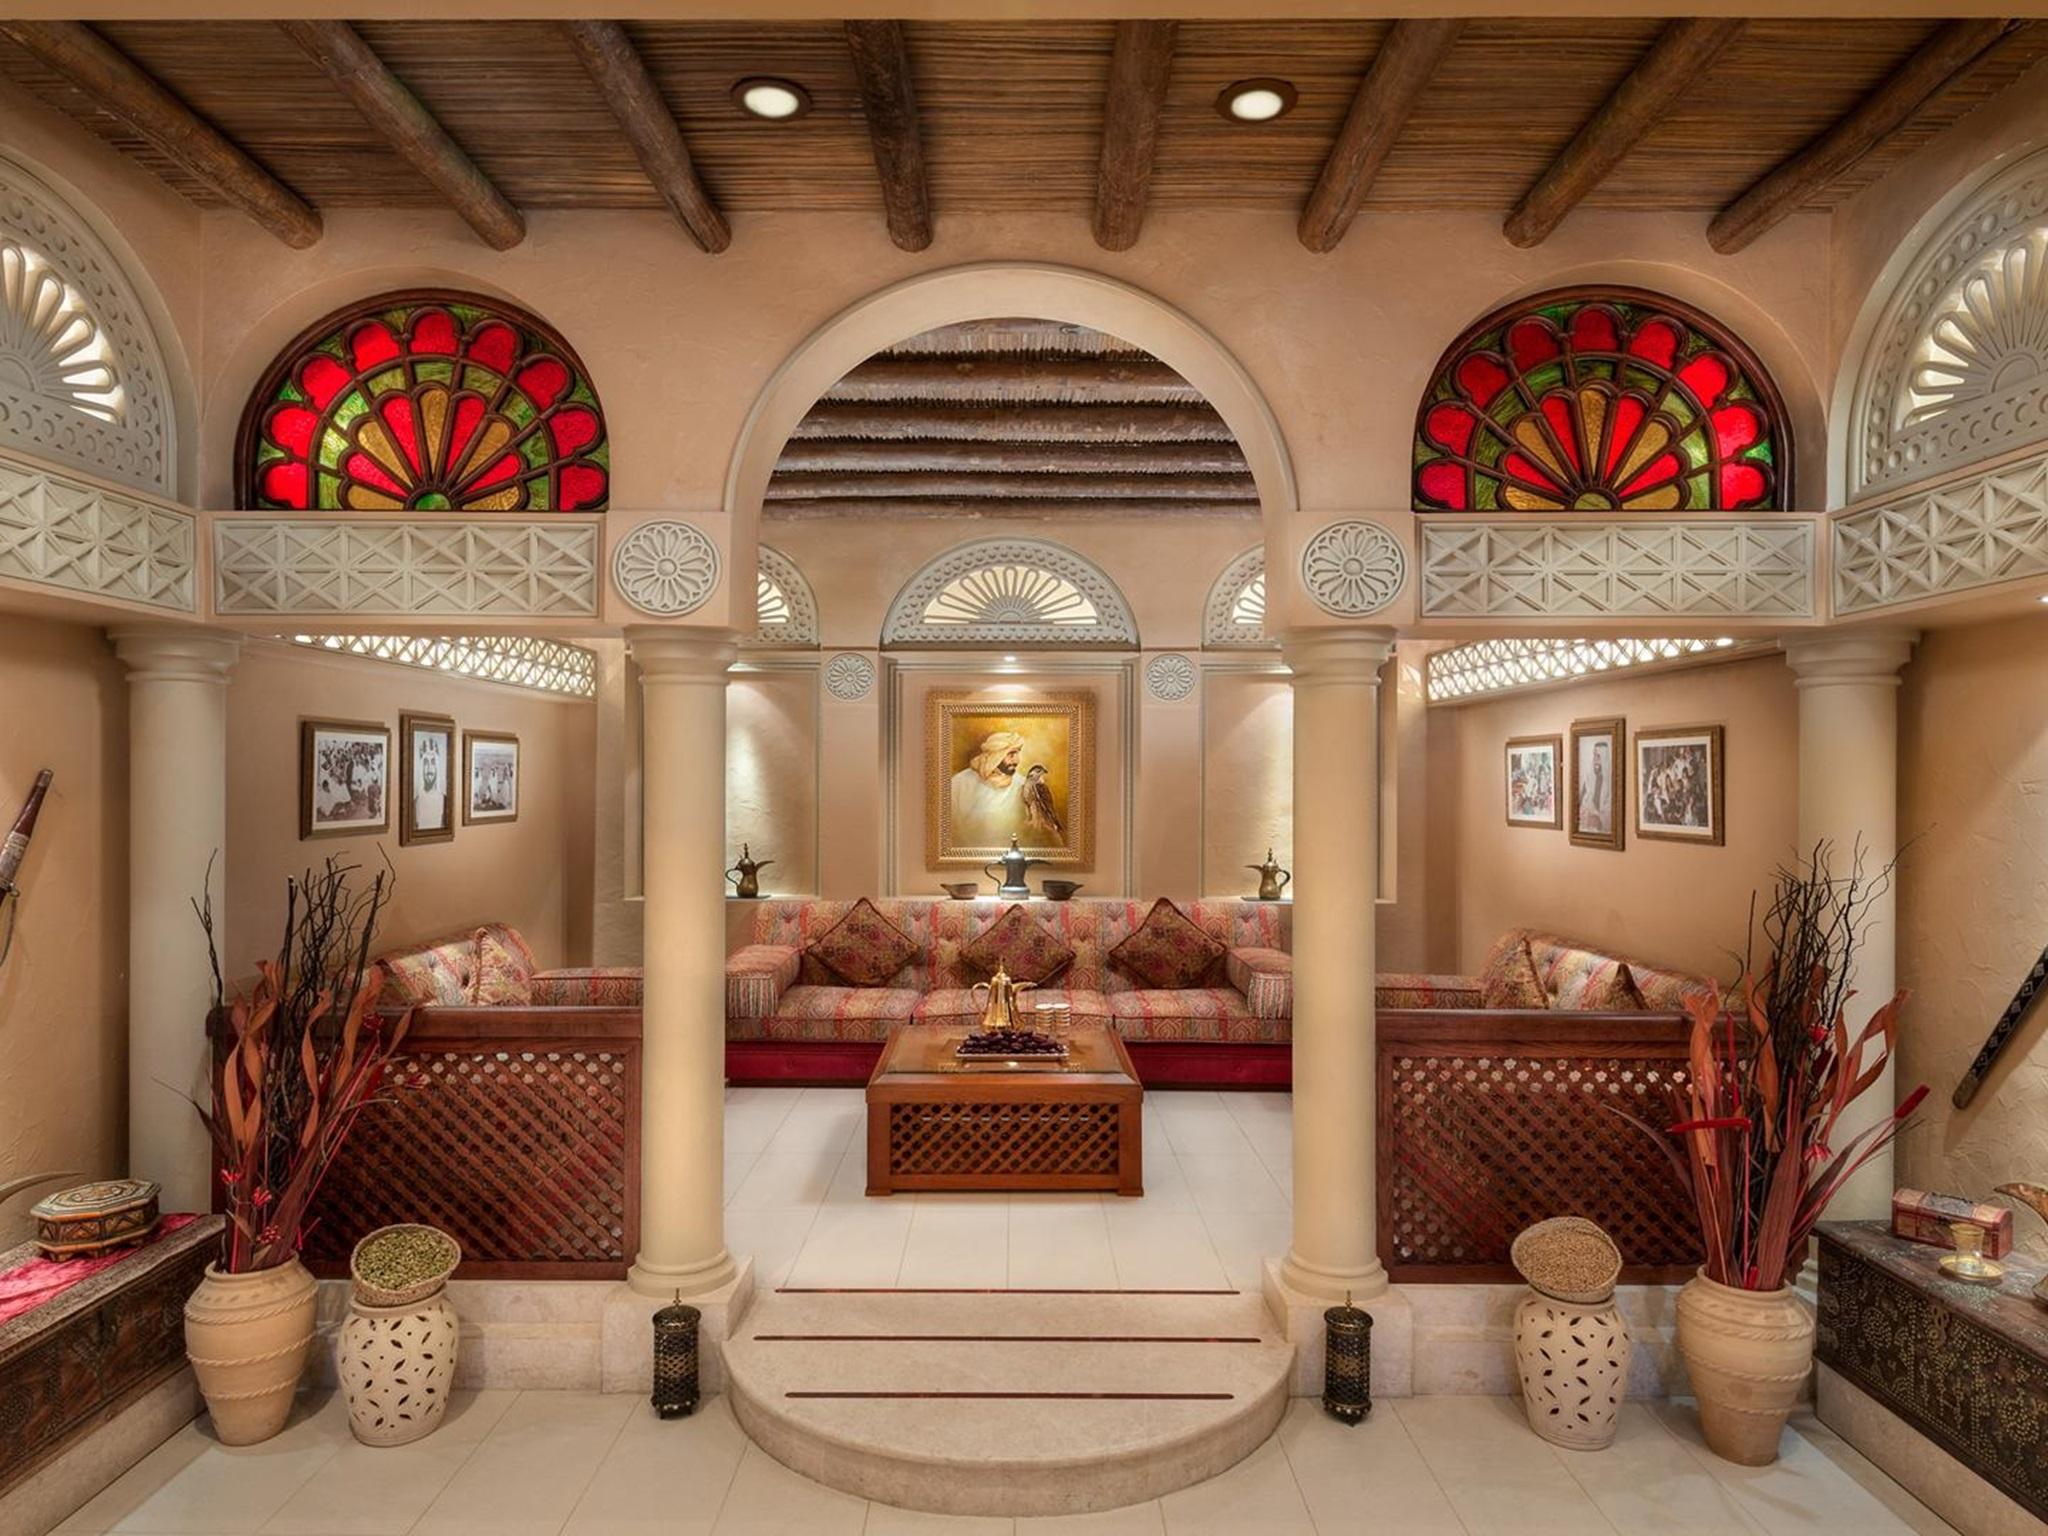 全球唯一的八星级酒店 迪拜阿布扎比皇宫酒店住不起啊来过过眼瘾